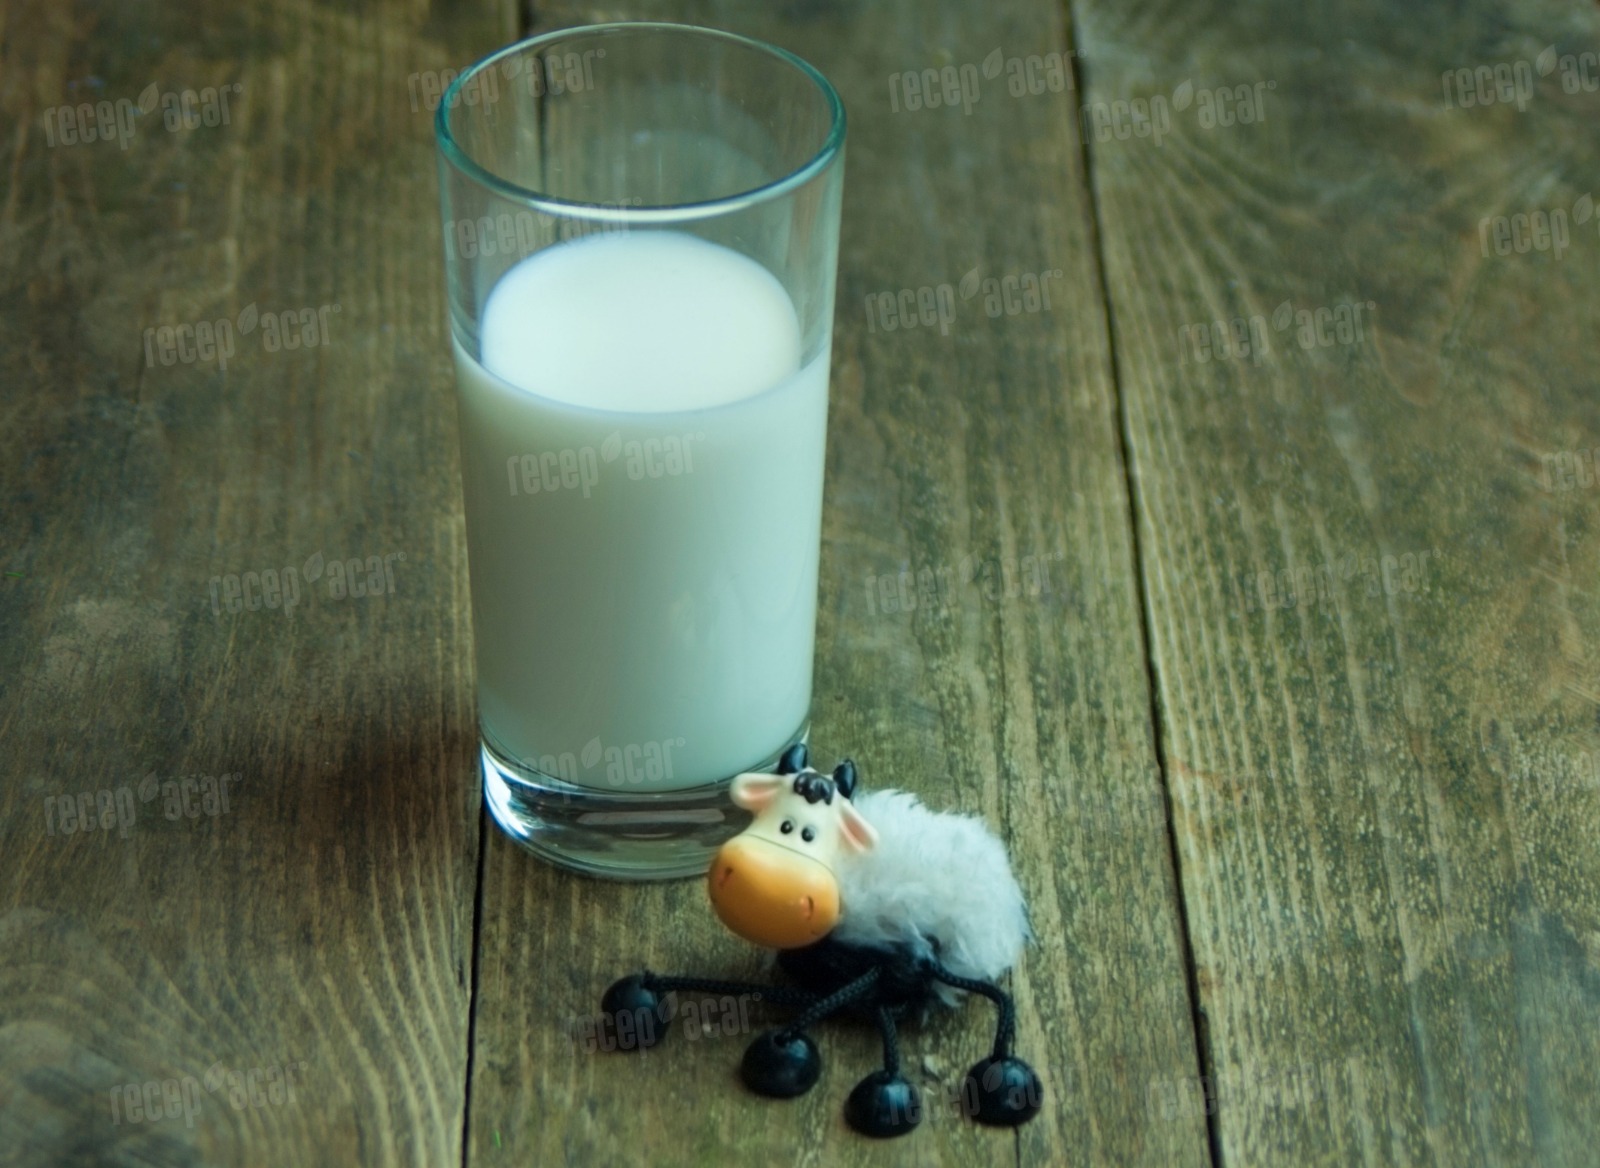 Taze sağılmış çiğ süt nasıl tüketilmeli?